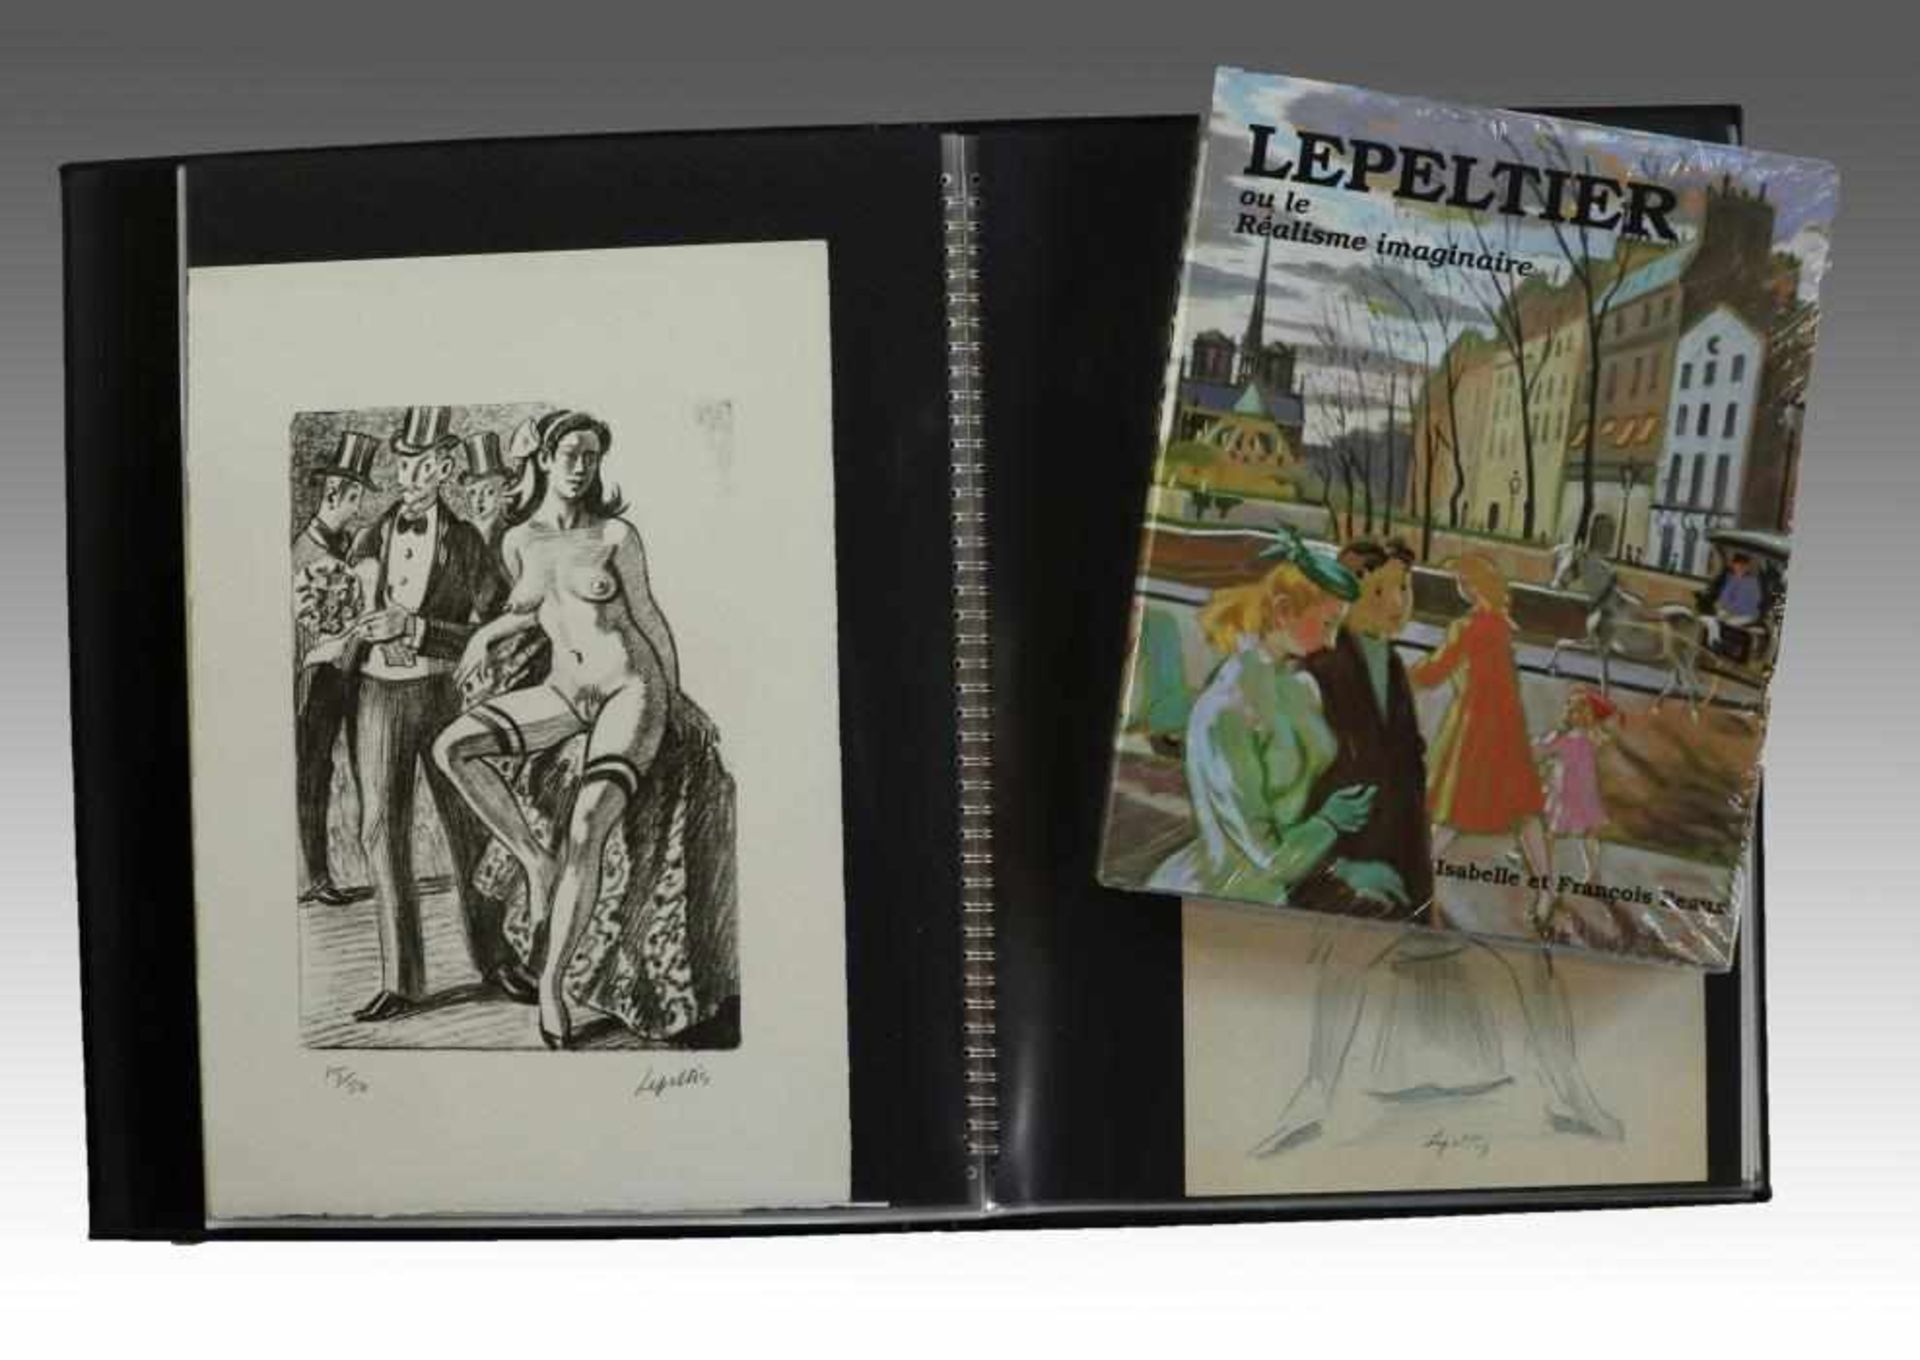 Lepeltier, Robert1913 Paris - 1996, Mappe m. 31 Zeichnungen/Mischtechniken/Lithos., Bleistift, - Bild 3 aus 6